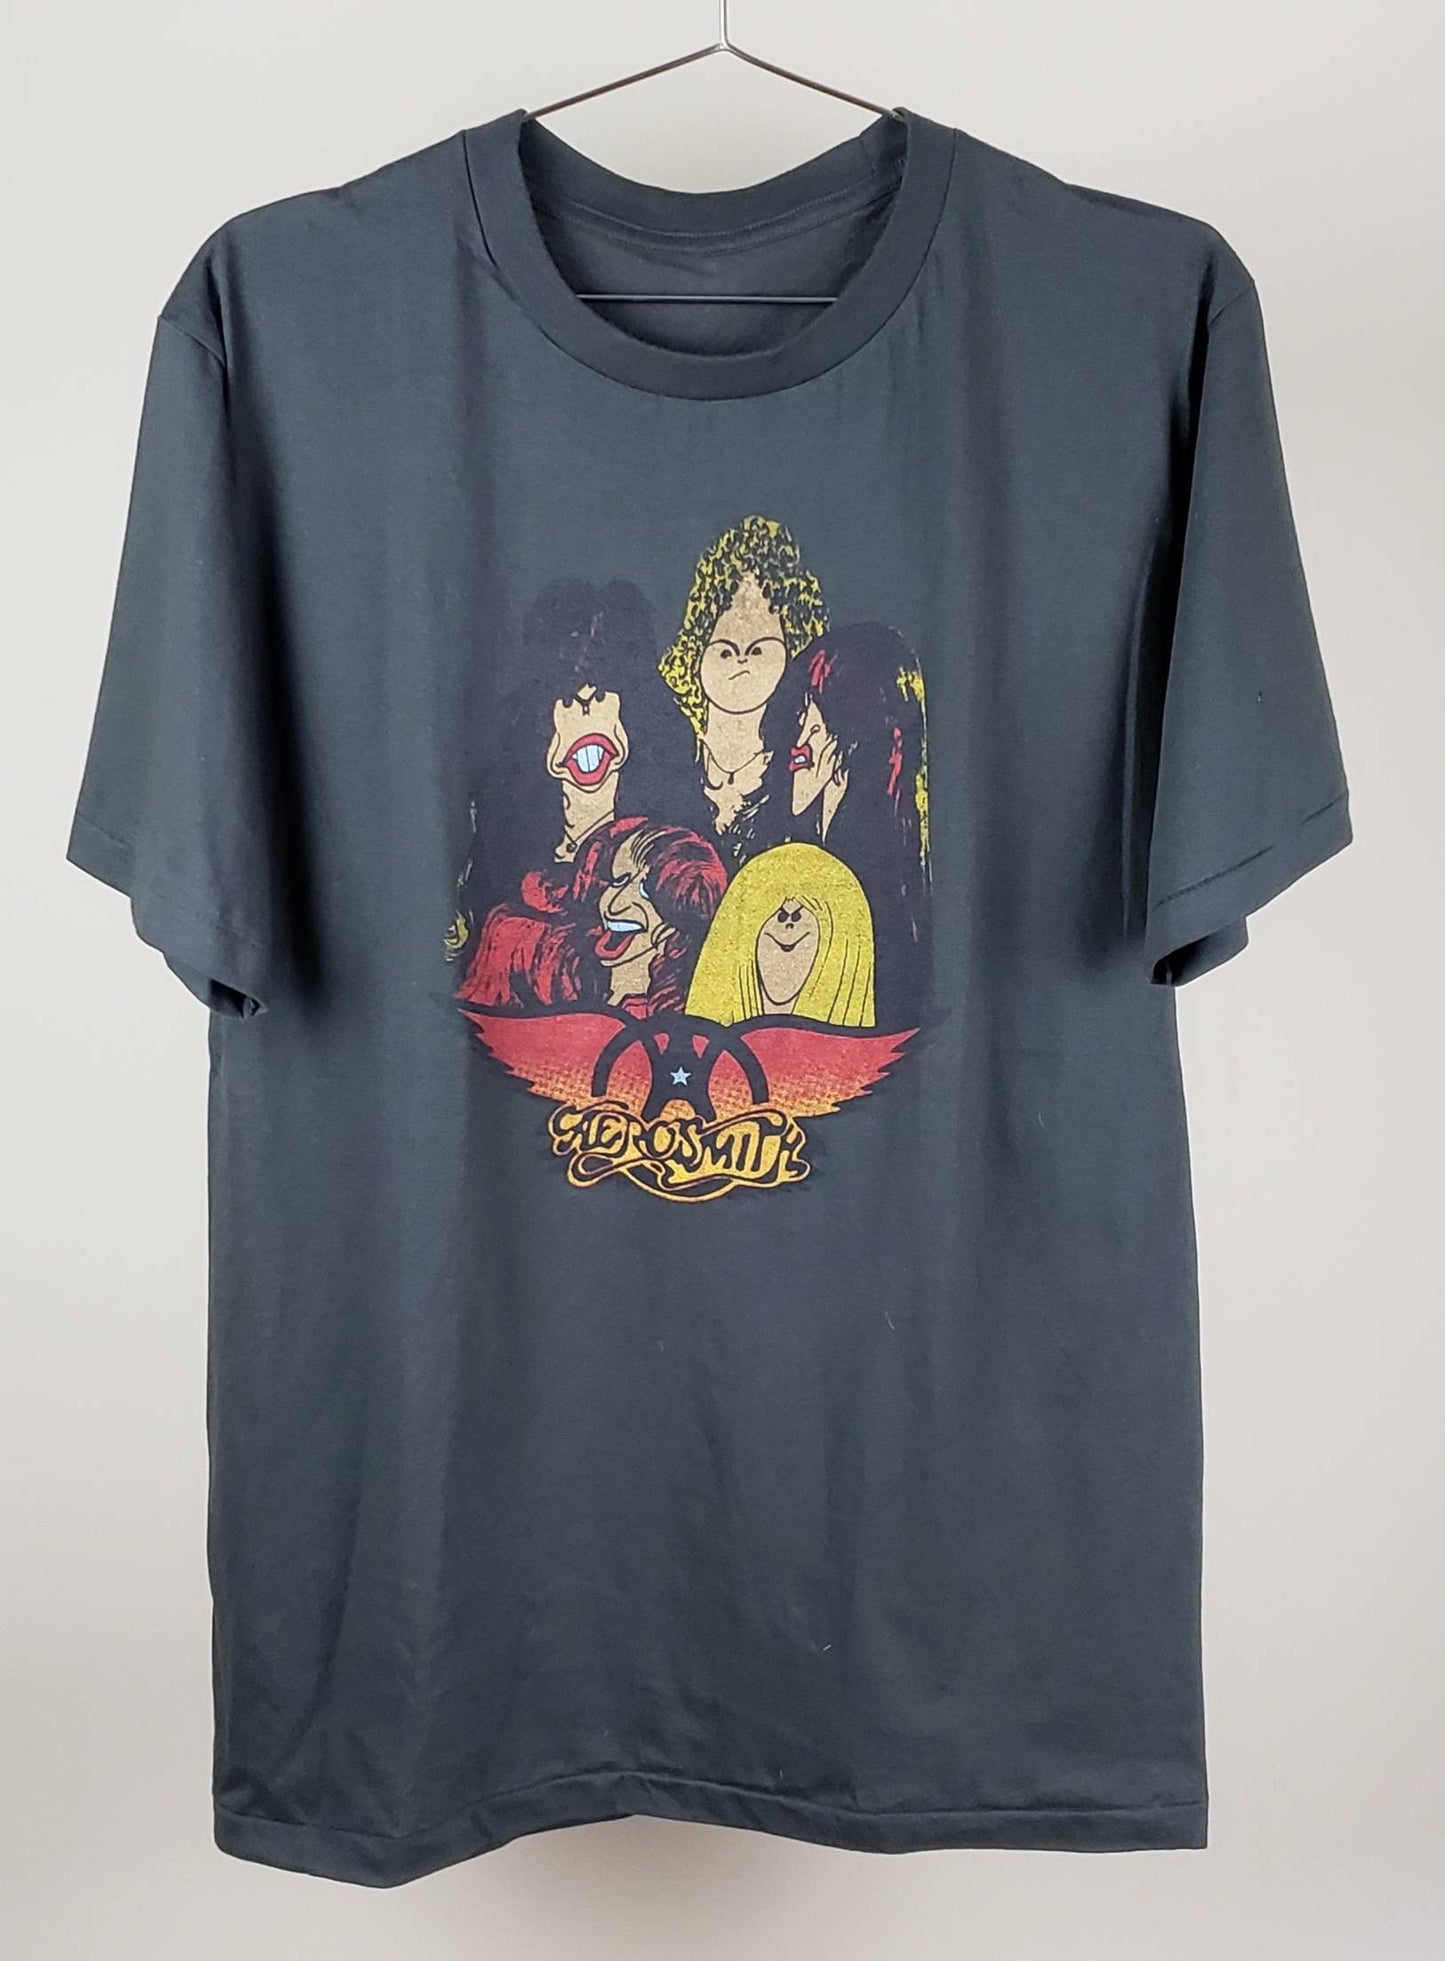 Aerosmith Retro Cartoon Art Tee T Shirt